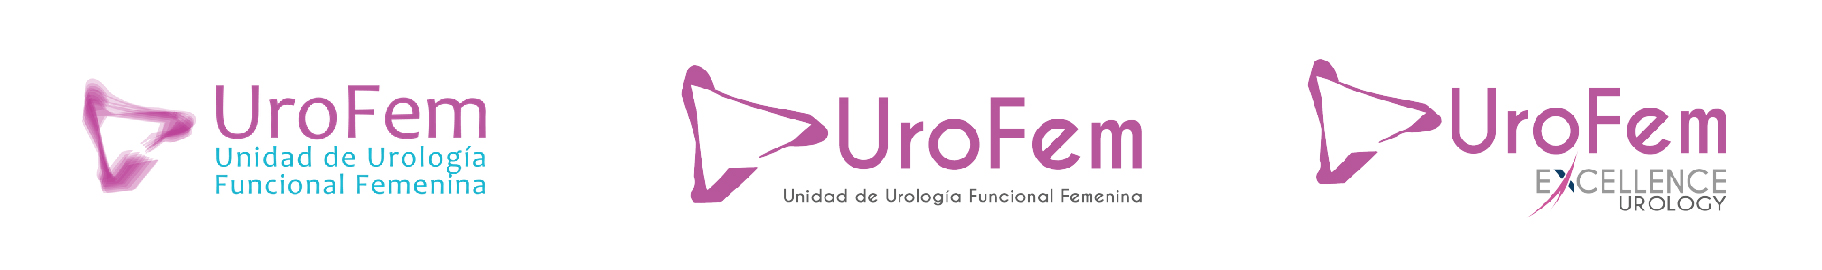 rebranding-logo-urofem-excellence-urology-agencia-t2k